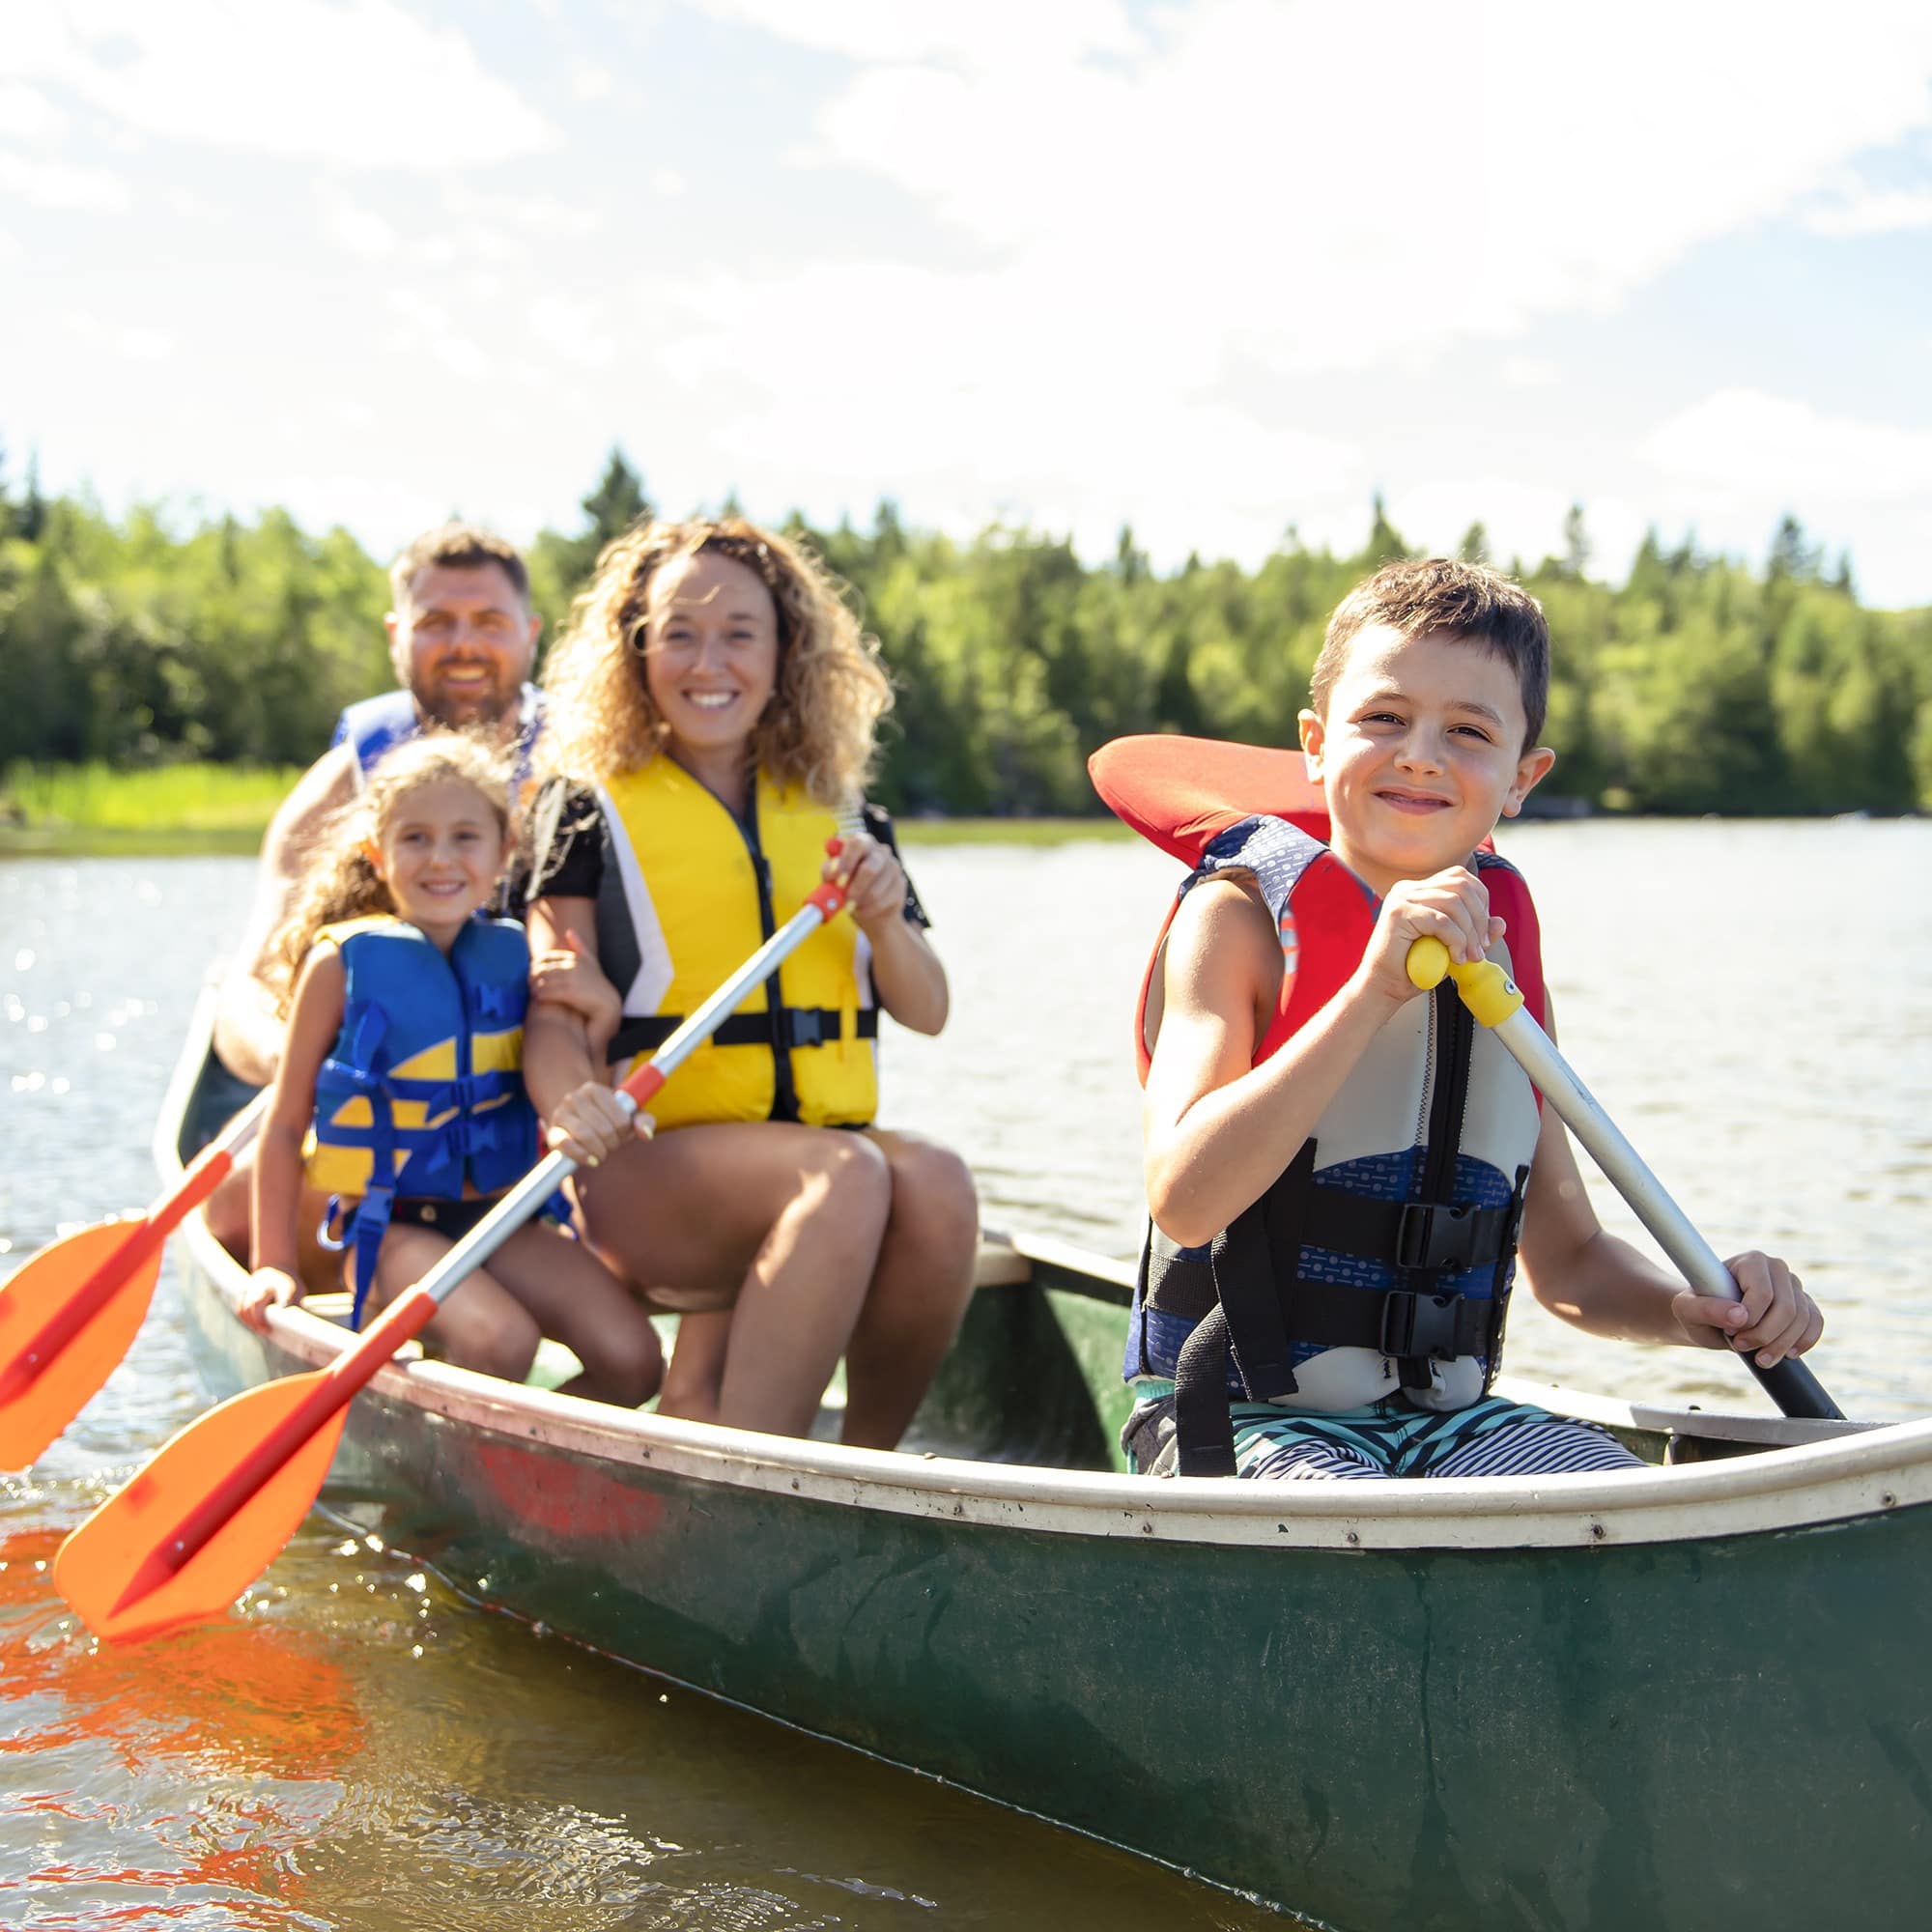 Familie mit 2 Kindern rudert in einem grünen Kanu auf einem See. Alle haben Schwimmwesten an.